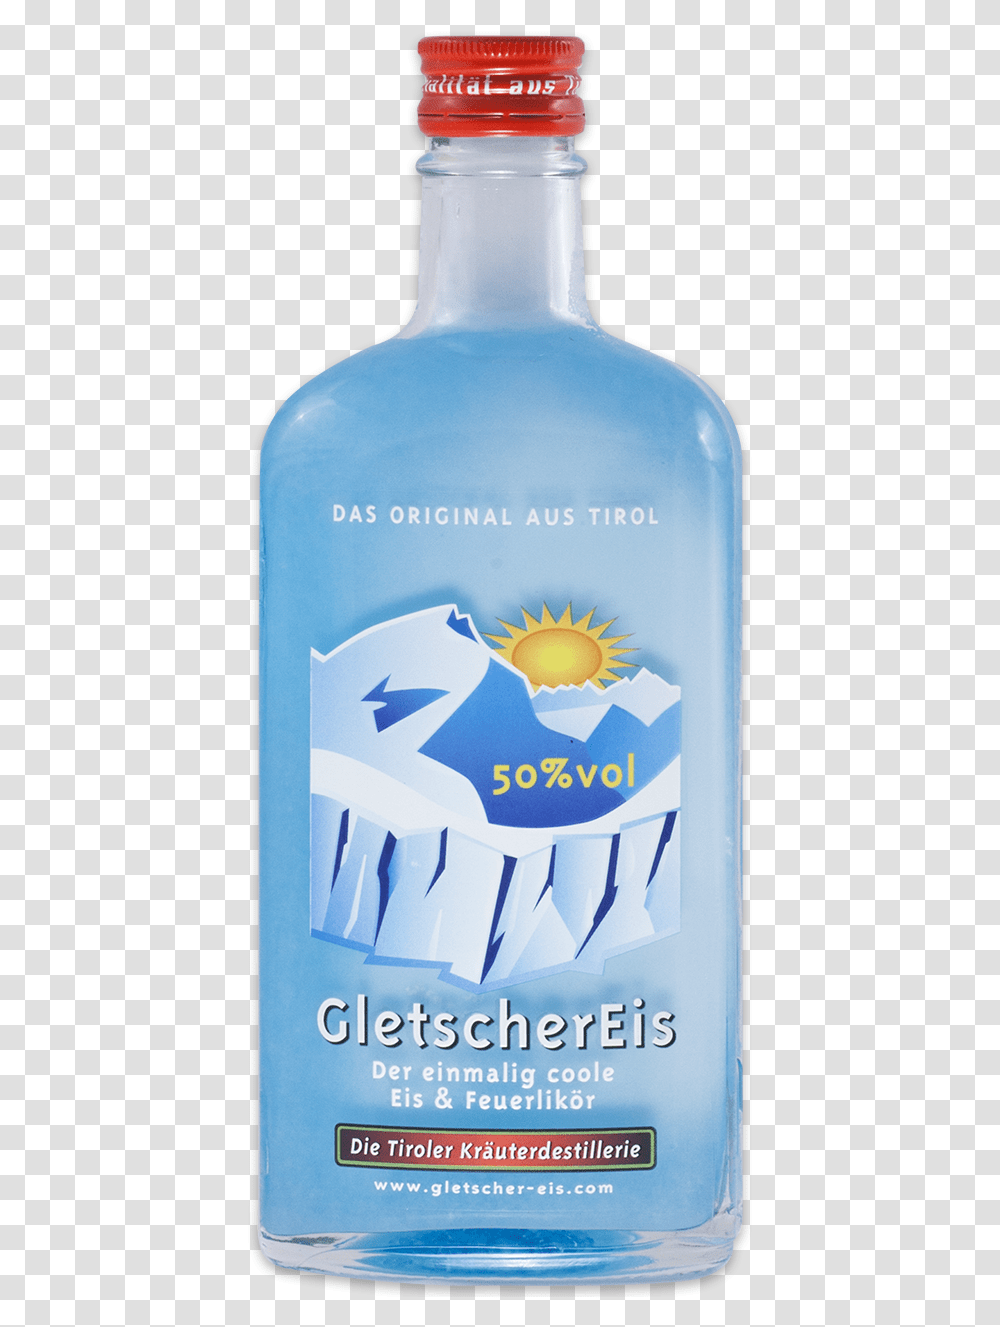 Glacier Ice Fireliqueur Baumann Glacier Ice Liqueur, Liquor, Alcohol, Beverage, Drink Transparent Png